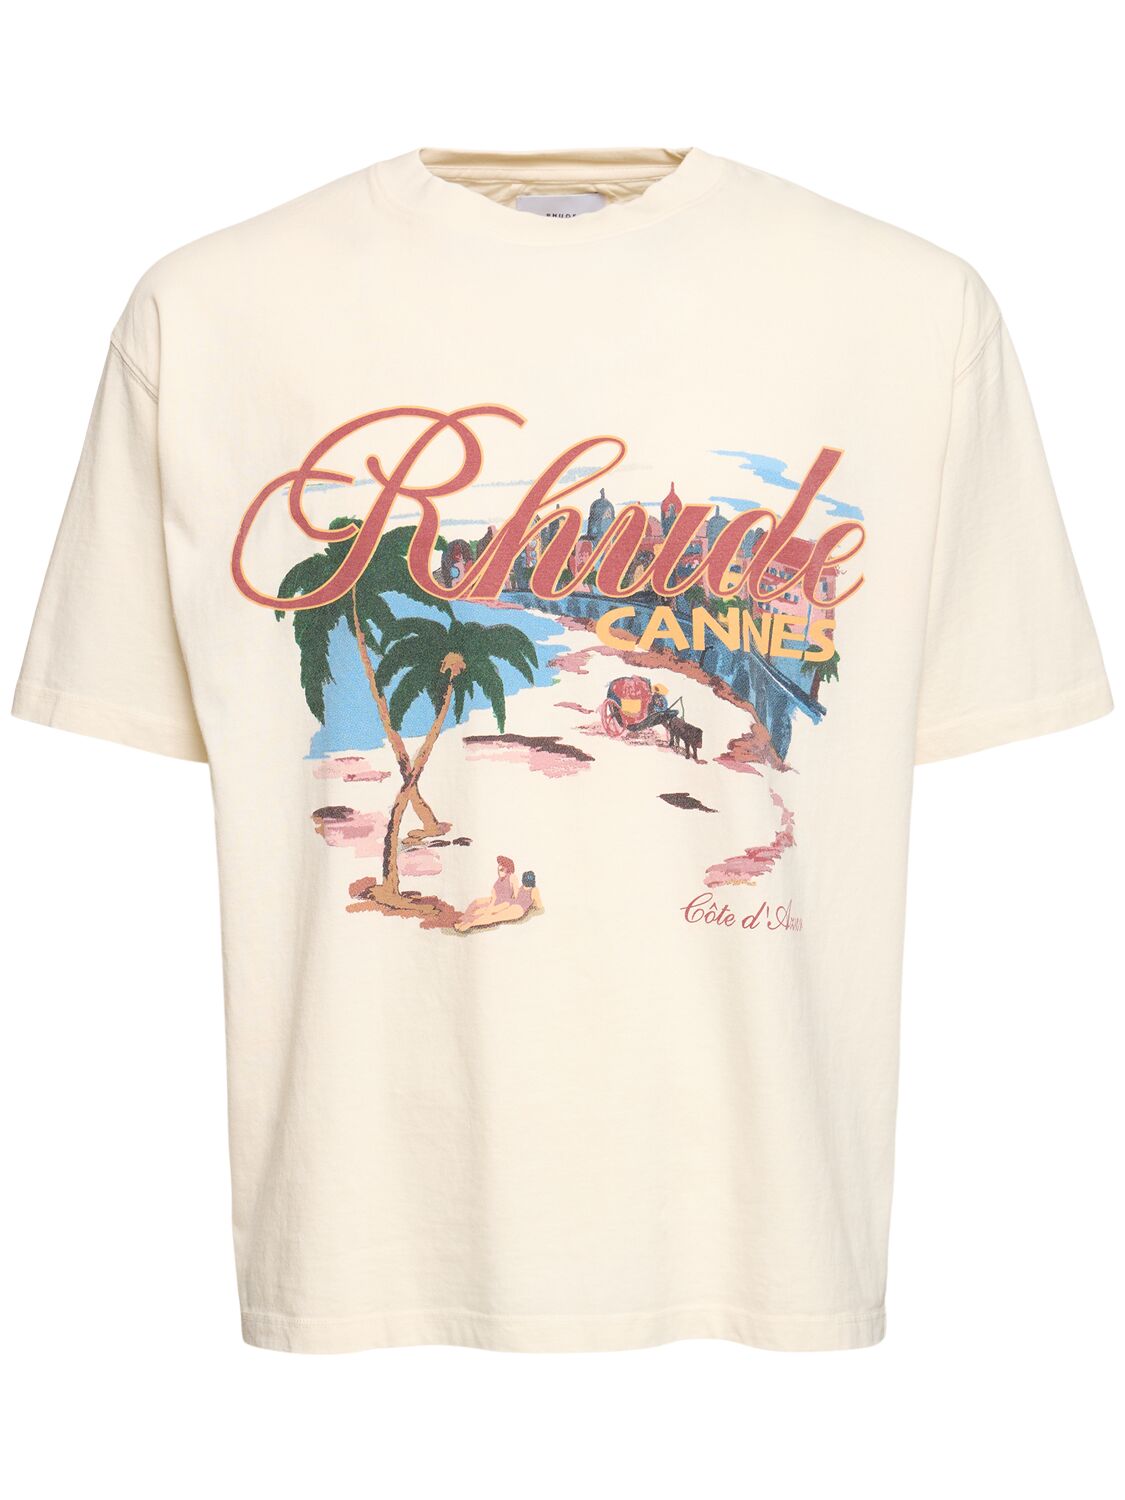 Cannes Beach T-shirt